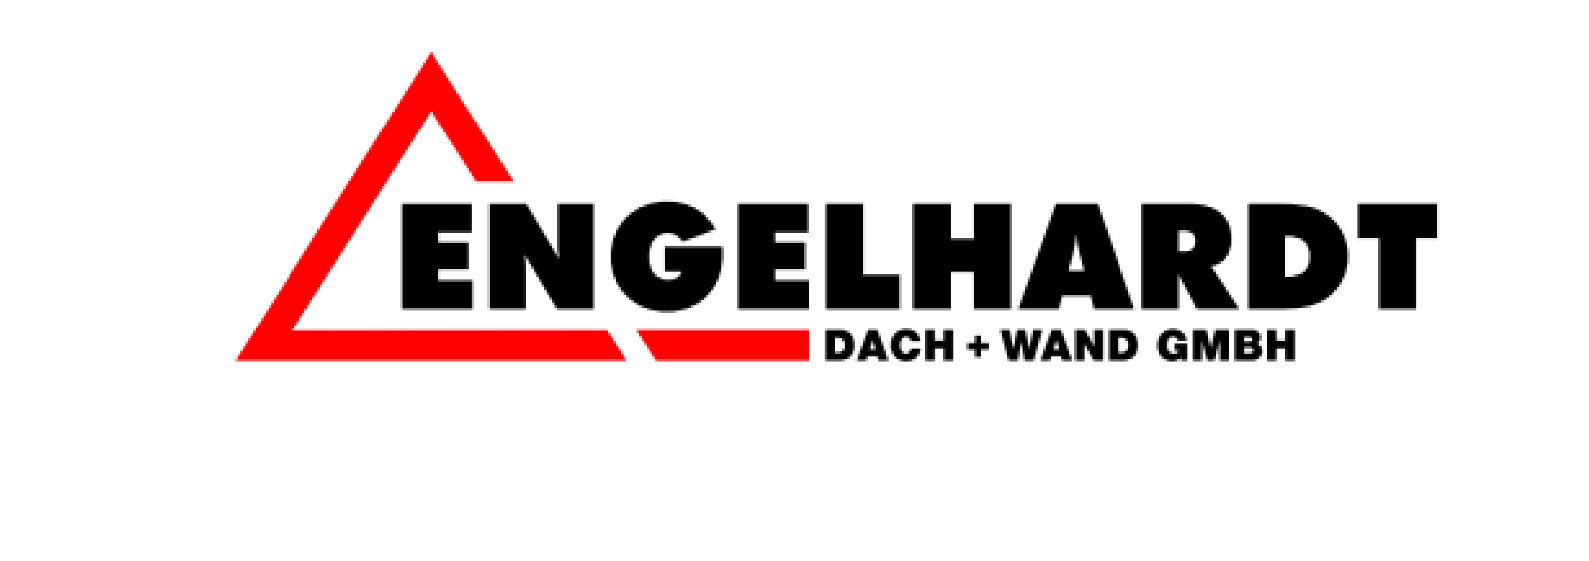 Engelhardt Dach + Wand GmbH - Dachdeckerarbeiten